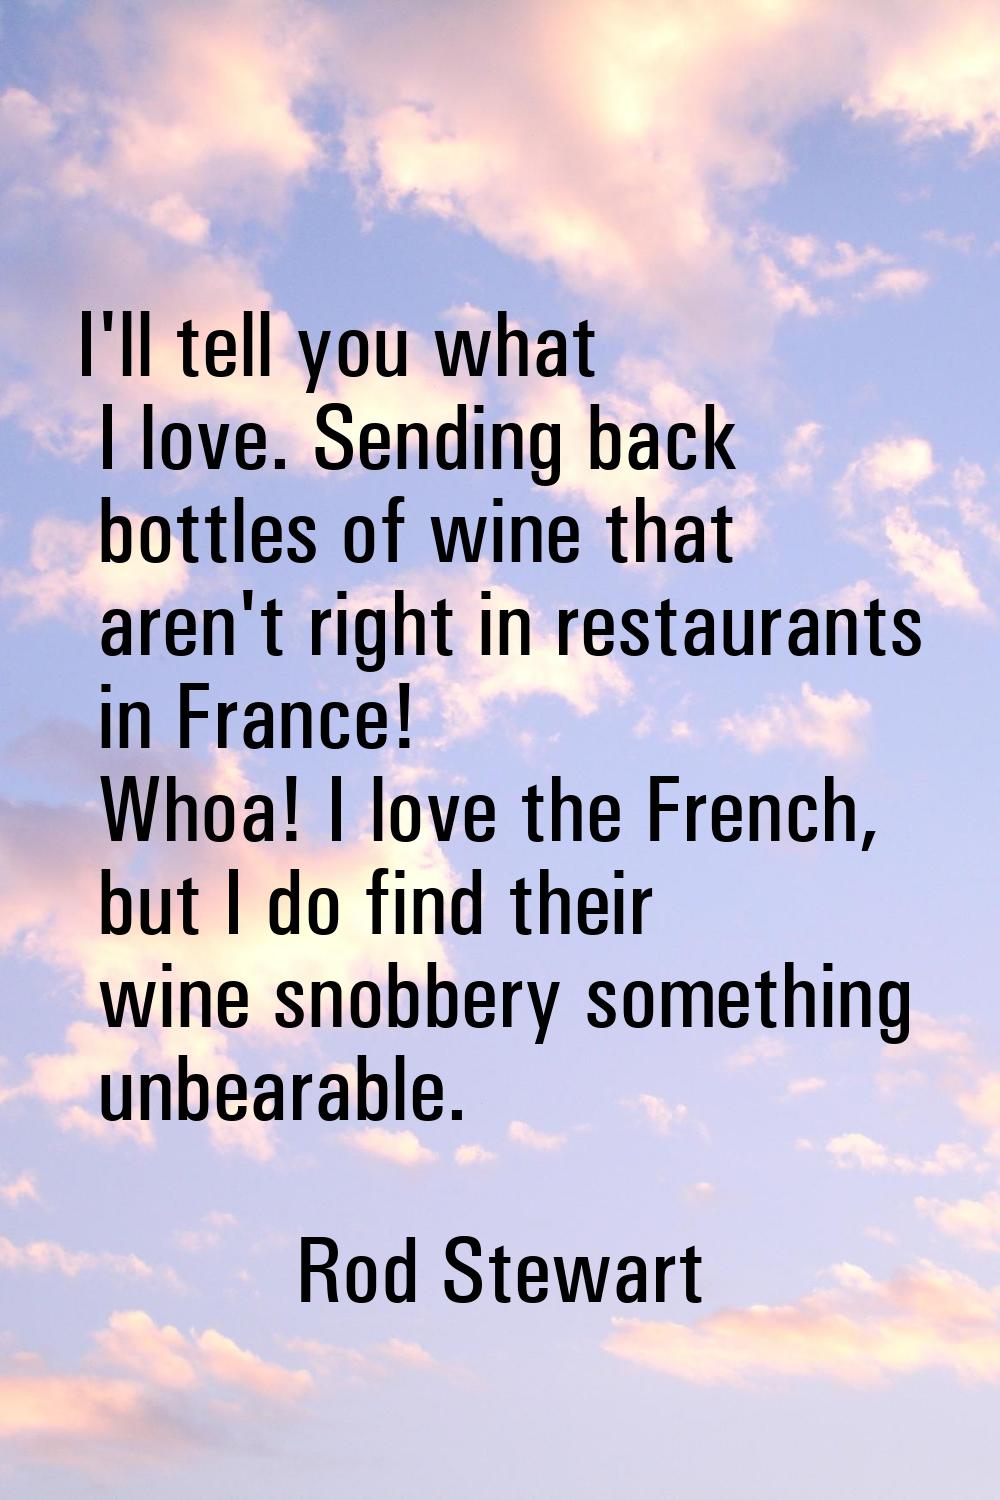 I'll tell you what I love. Sending back bottles of wine that aren't right in restaurants in France!